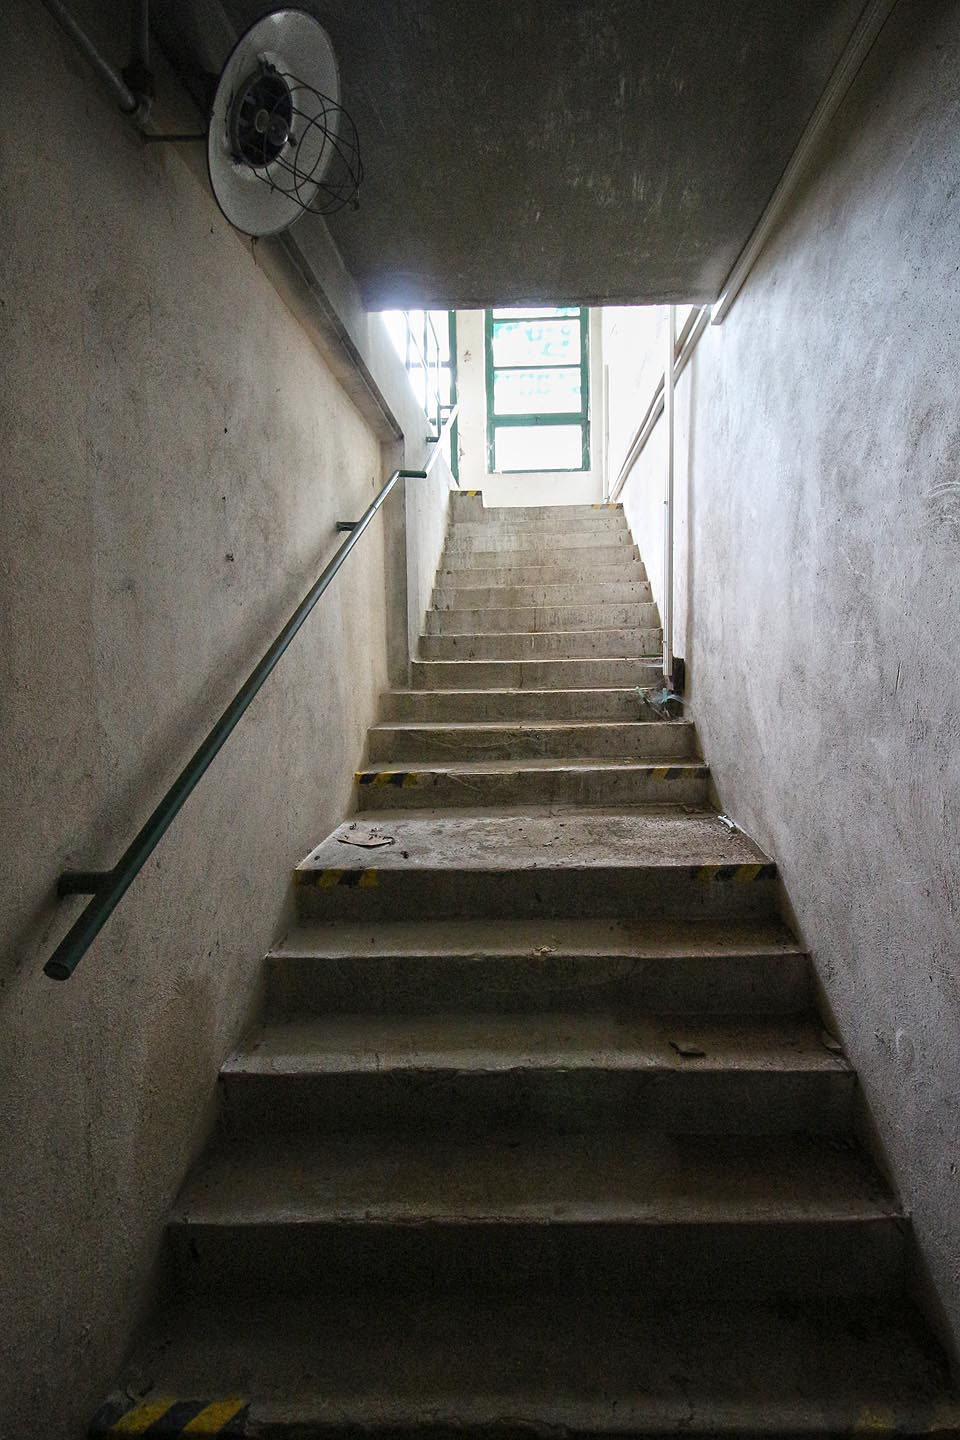 Po schodech lze sestoupit do prvního podzemního podlaží.